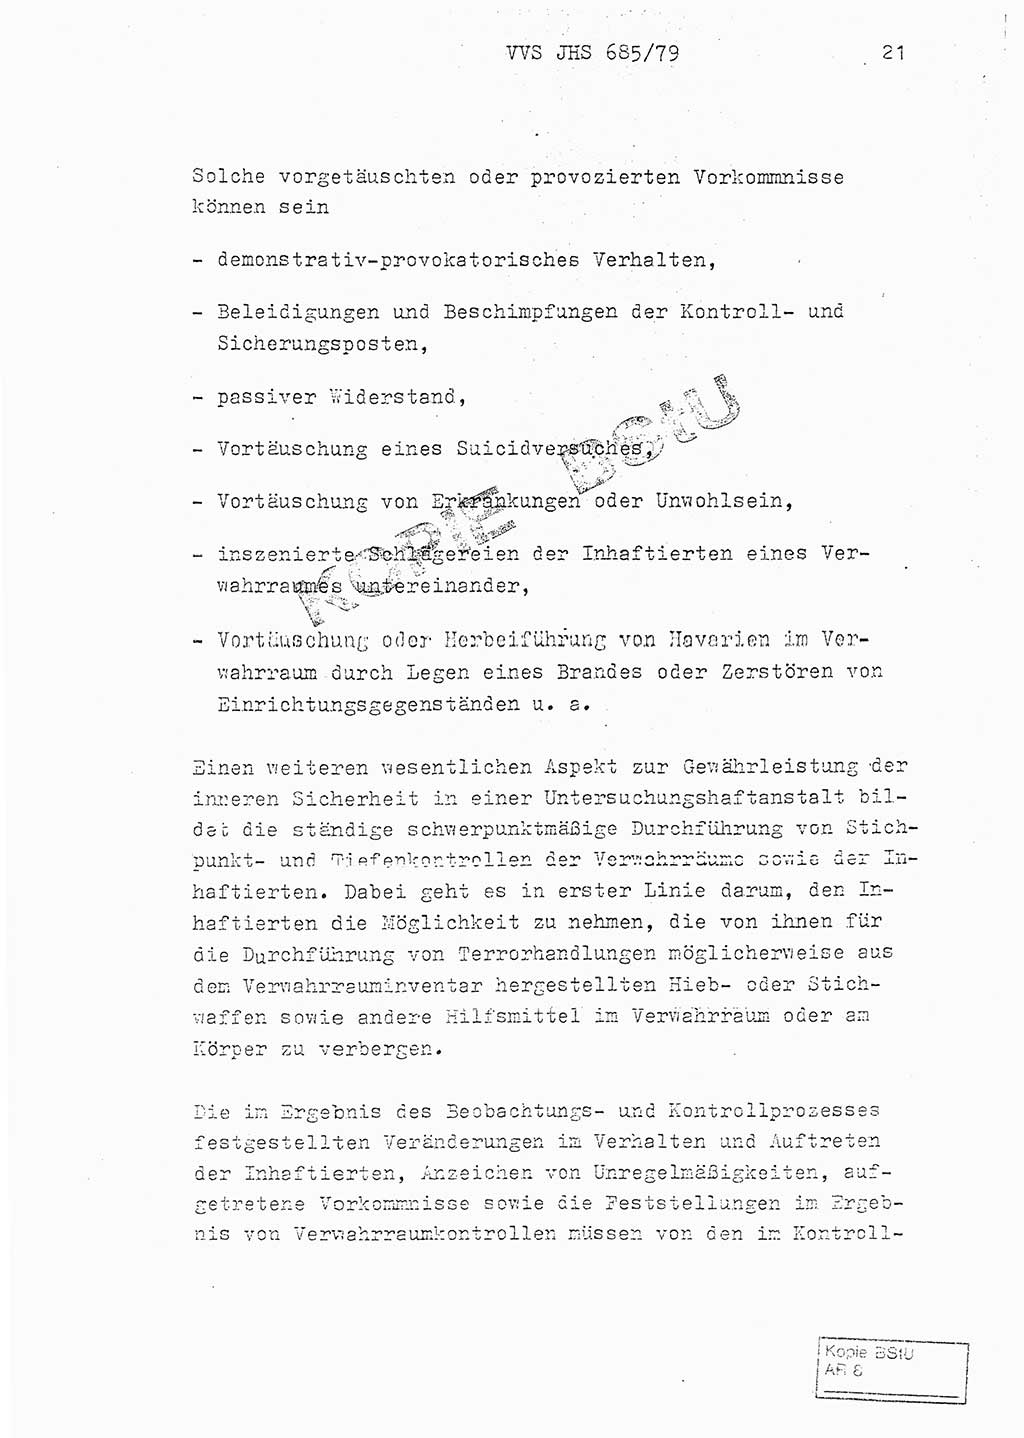 Fachschulabschlußarbeit Oberleutnant Helmut Peckruhn (BV Bln. Abt. ⅩⅣ), Ministerium für Staatssicherheit (MfS) [Deutsche Demokratische Republik (DDR)], Juristische Hochschule (JHS), Vertrauliche Verschlußsache (VVS) 001-685/79, Potsdam 1979, Seite 21 (FS-Abschl.-Arb. MfS DDR JHS VVS 001-685/79 1979, S. 21)